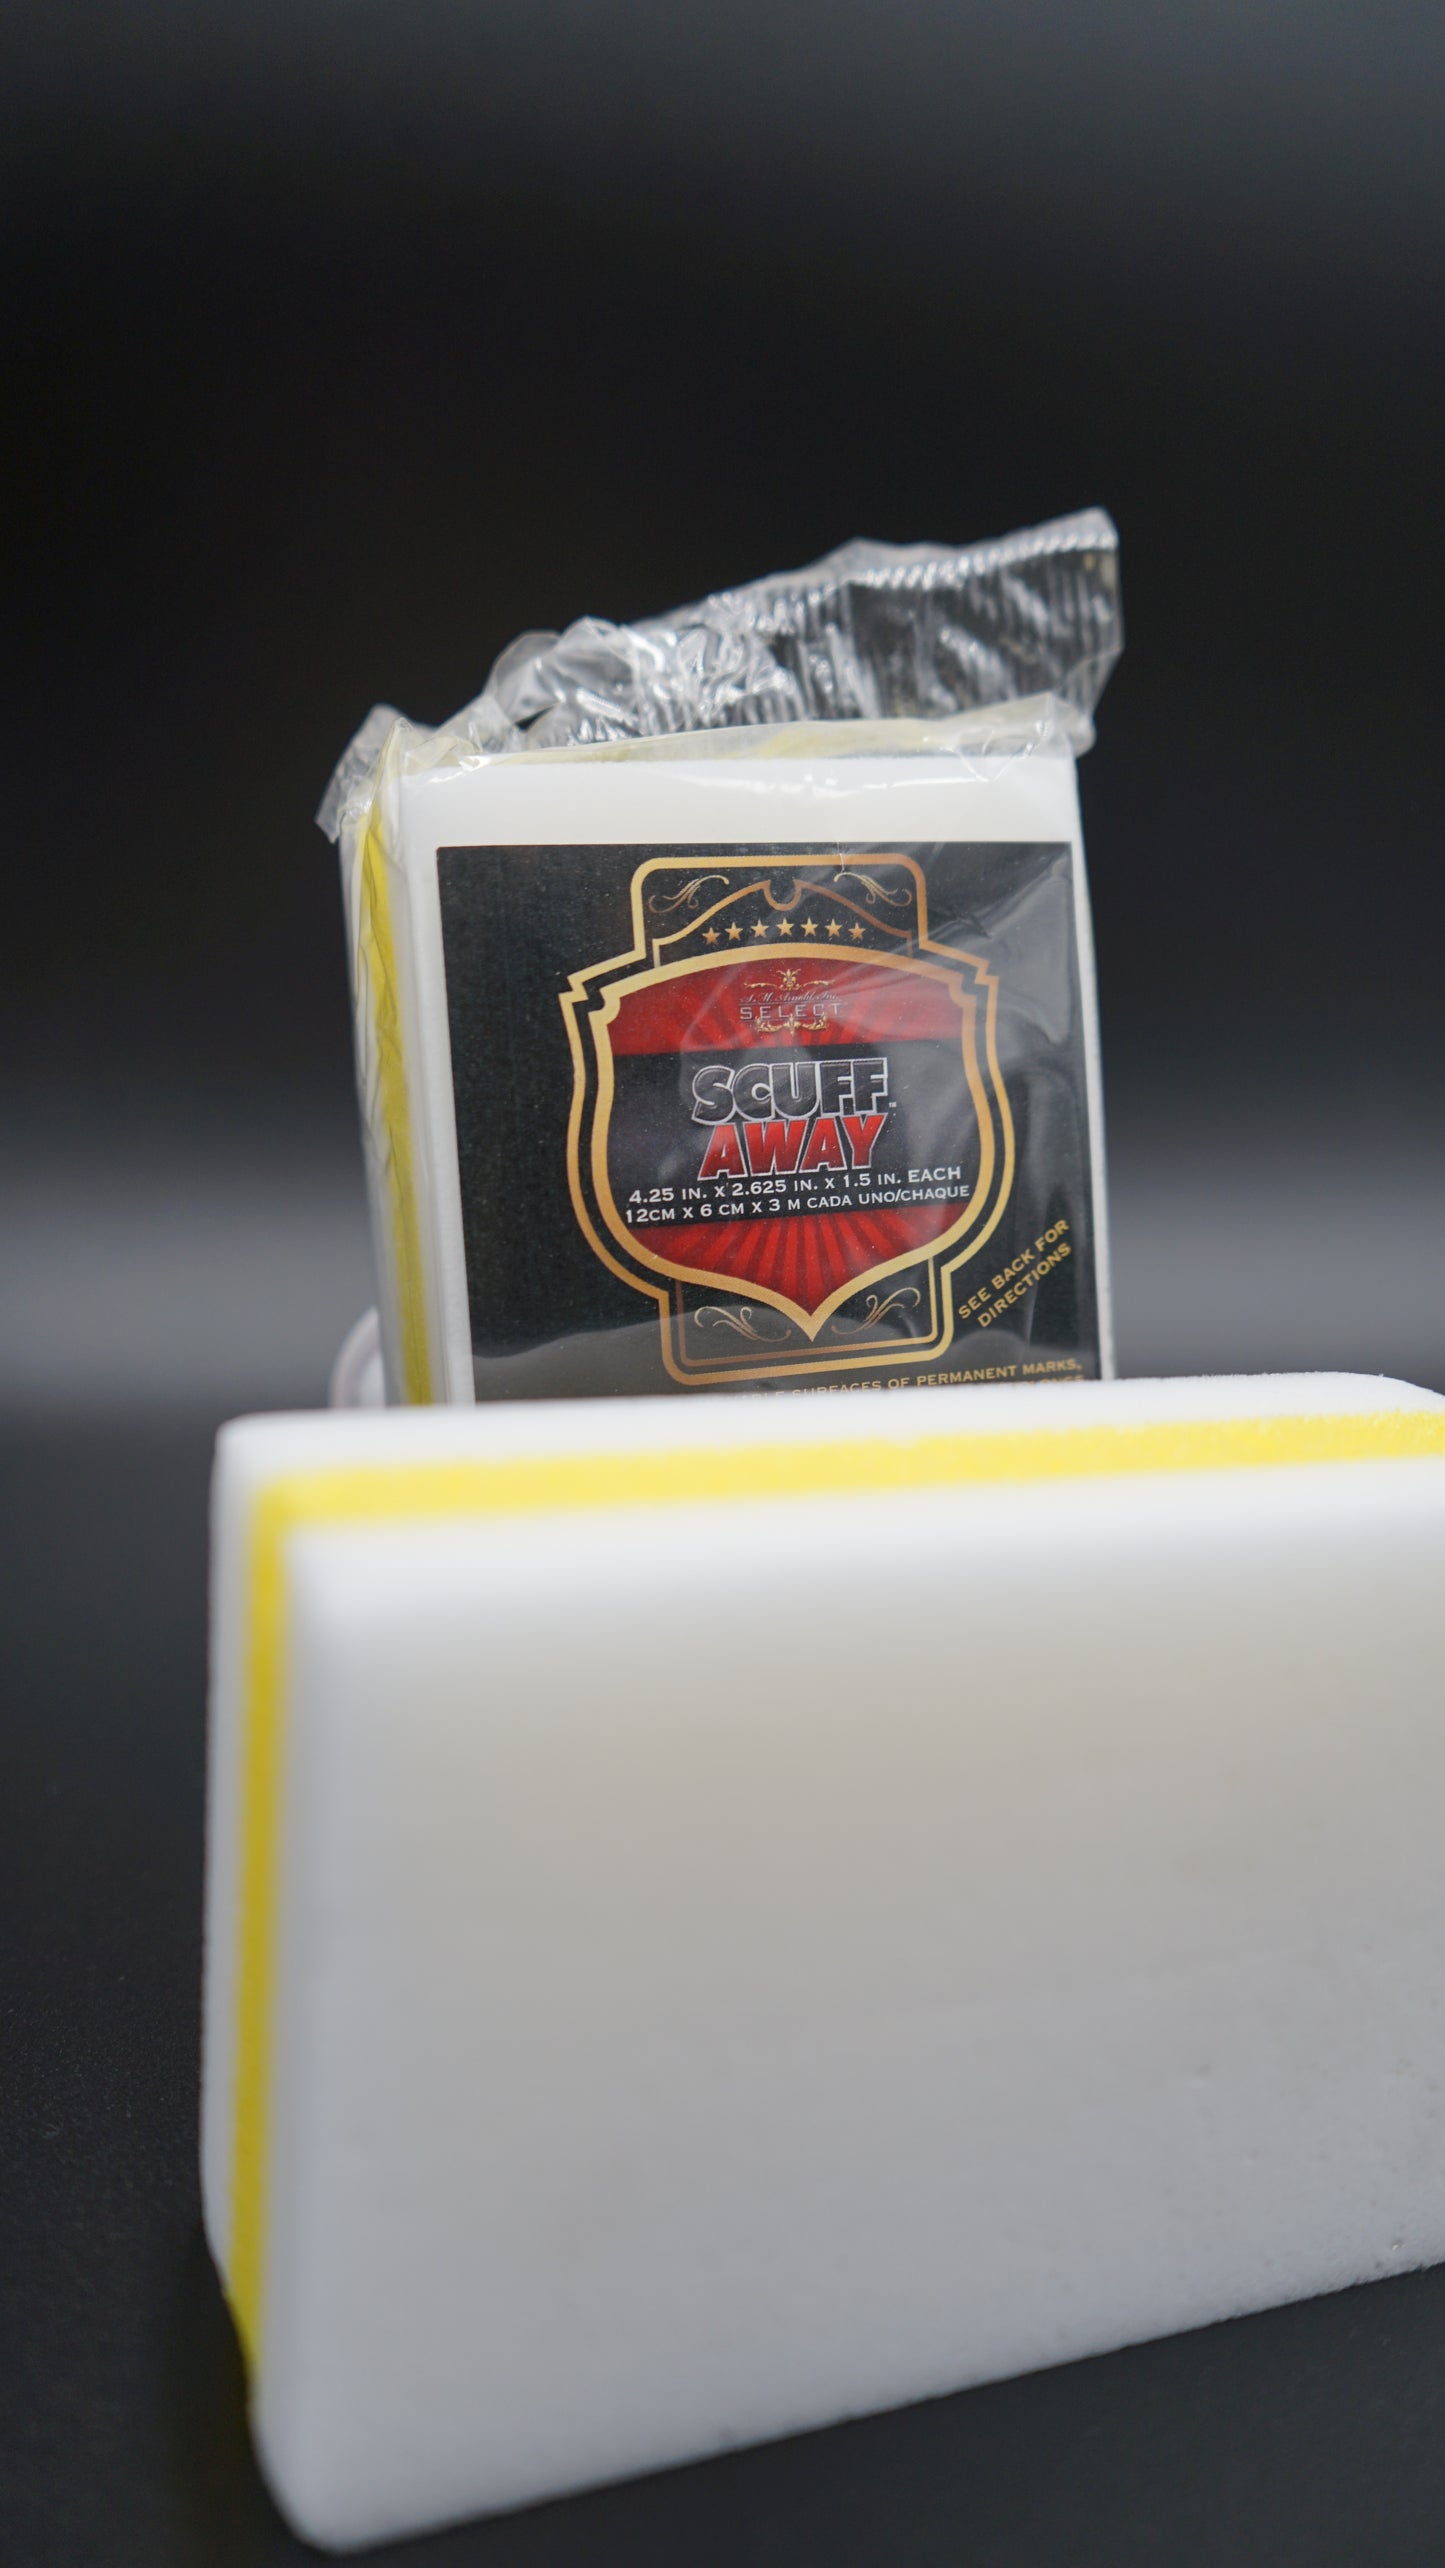 SM Arnold- White Eraser Sandwich with yellow foam- 85-426